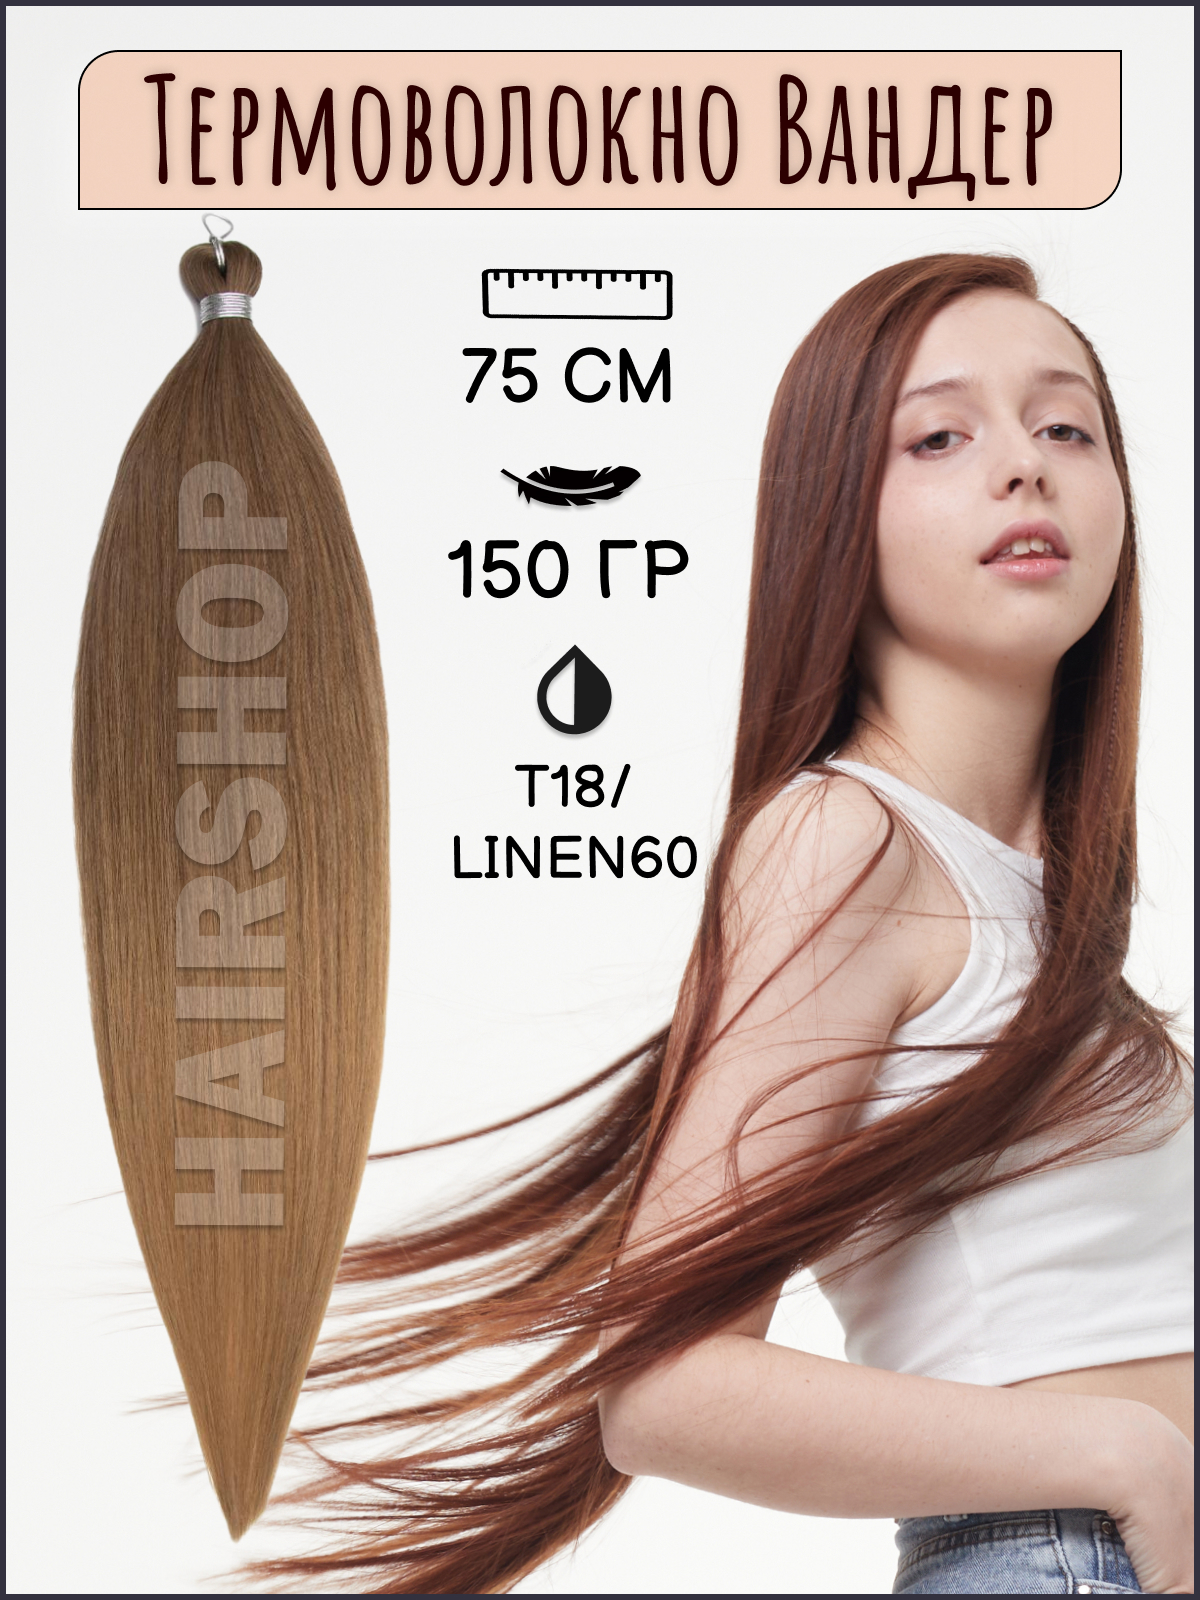 Термоволокно для наращивания Hairshop Вандер T18Linen60 150г 150см китай полная история